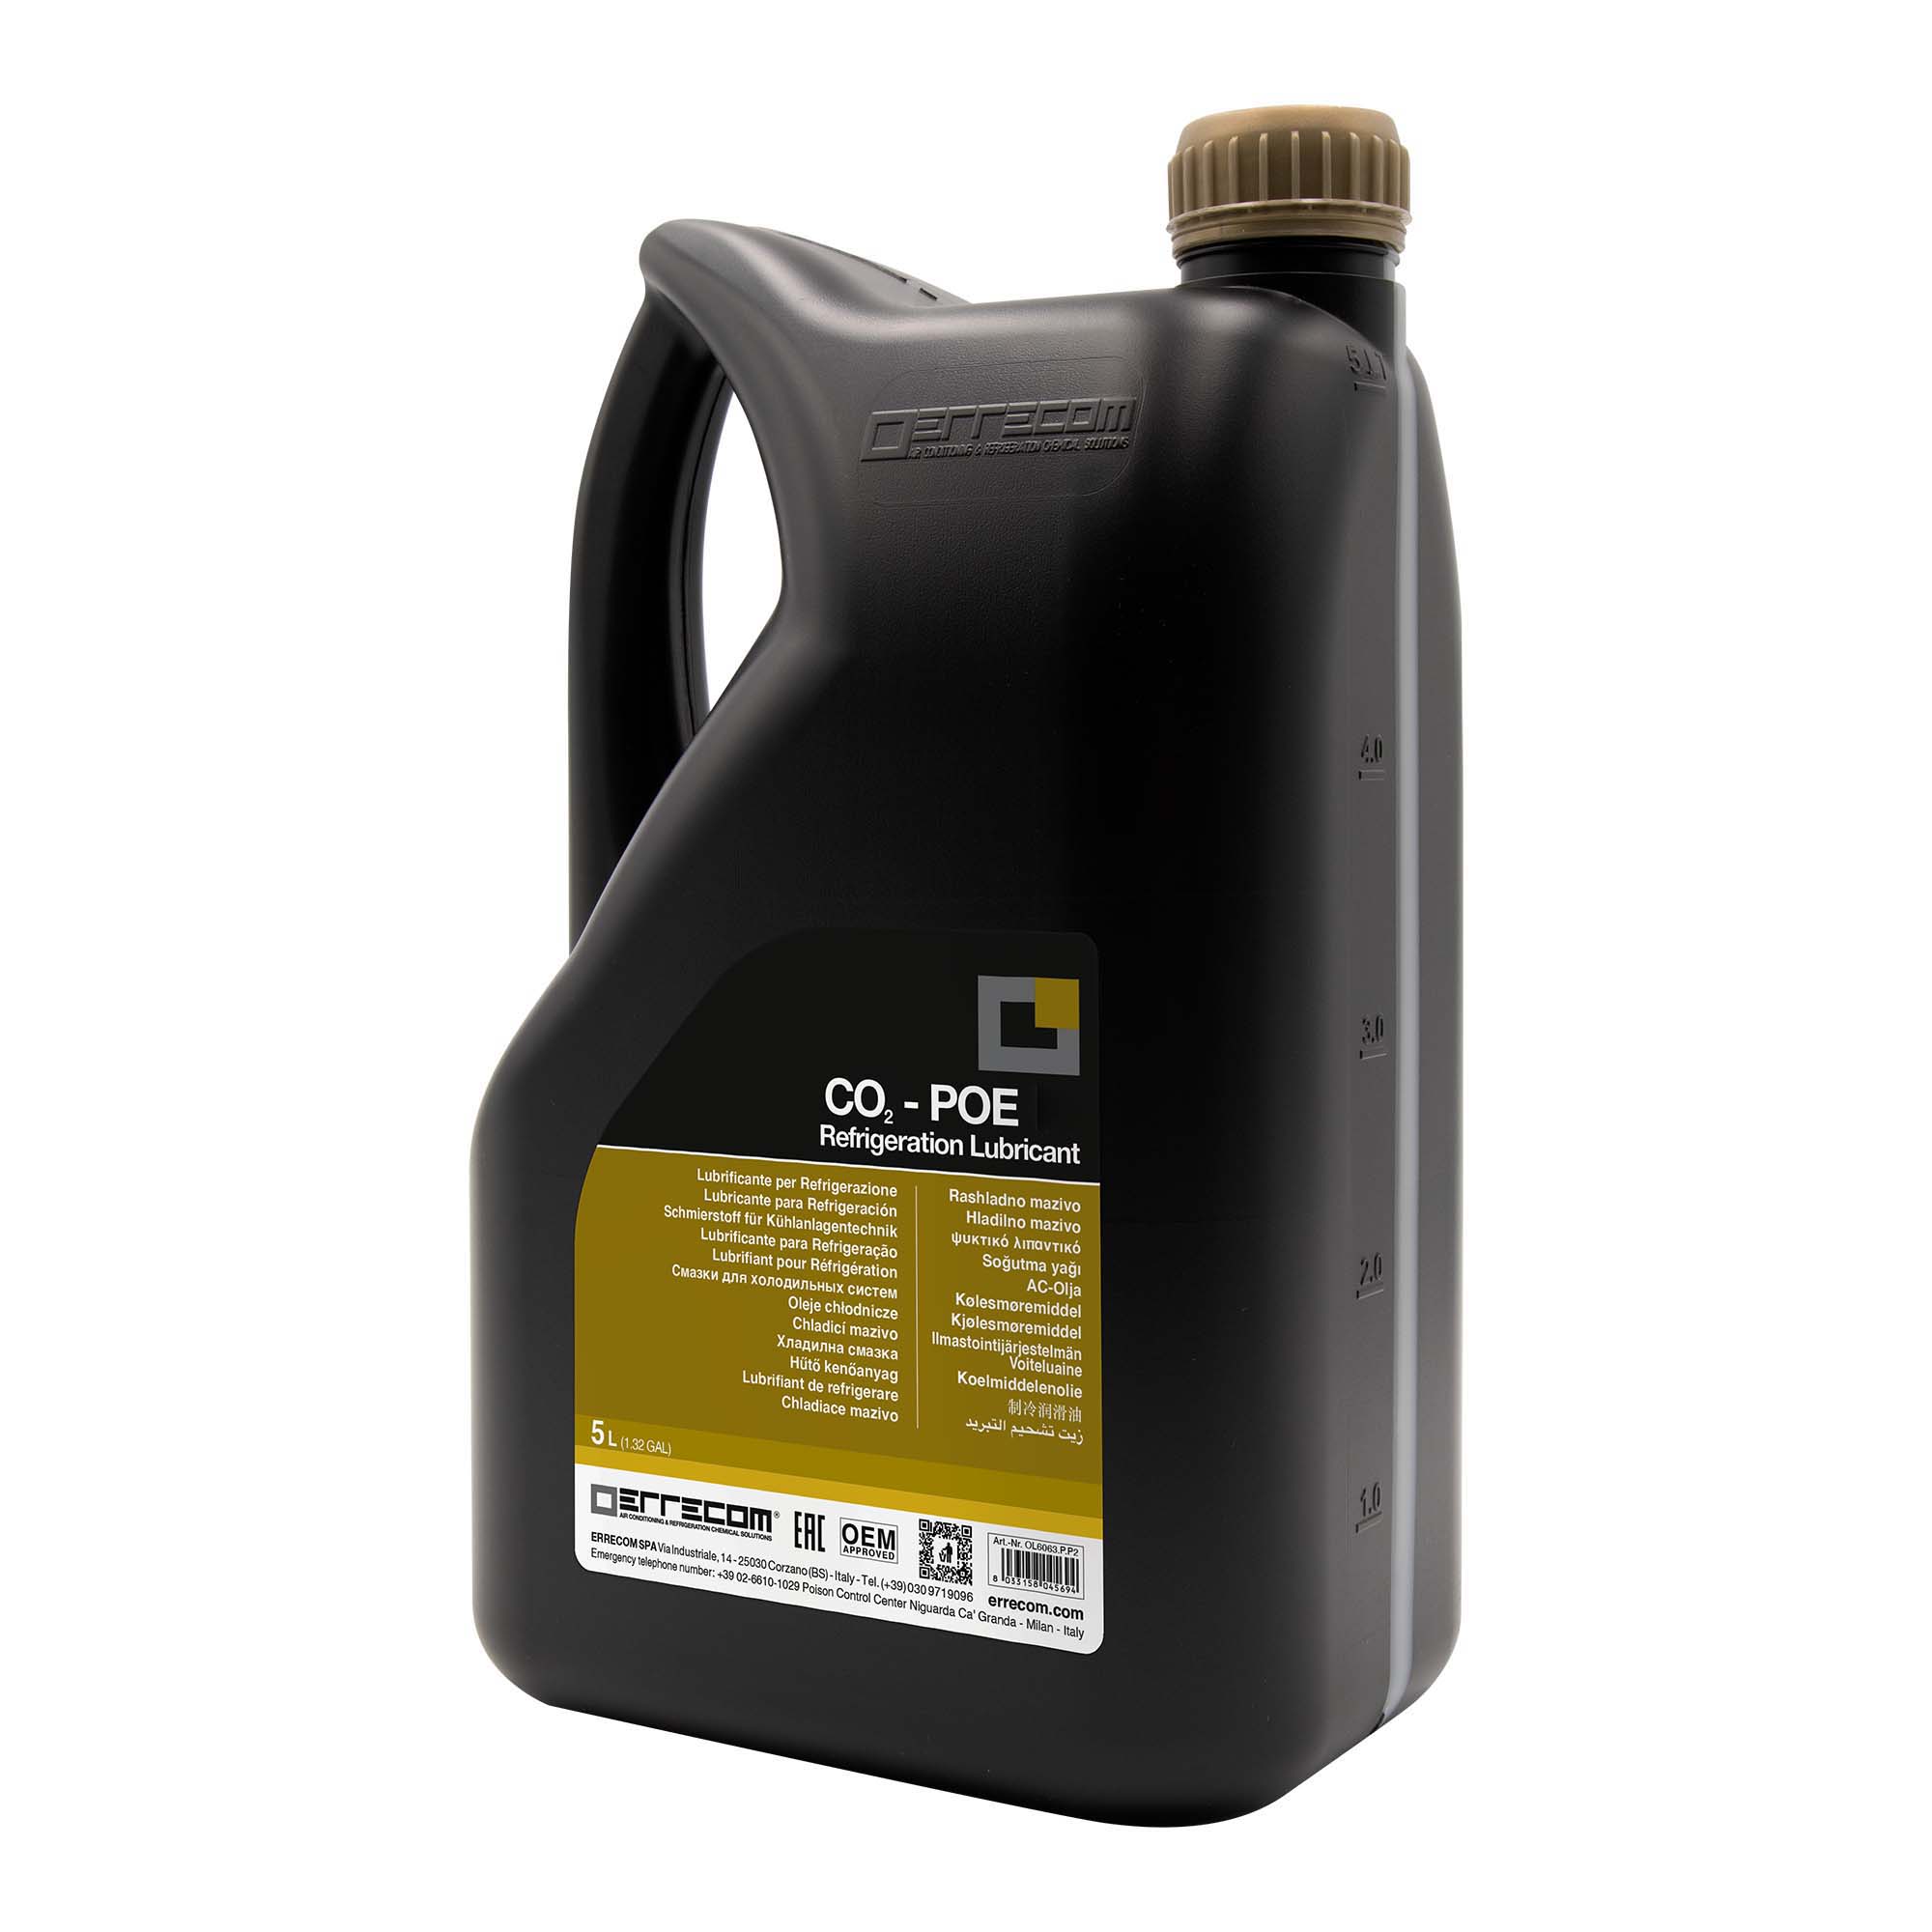 2 x Olio lubrificante Refrigerazione Polyol Estere (POE) specifico per CO2 Errecom 55 - Tanica in Plastica da 5 lt. - Confezione n° 2 pz. (totale 10 litri)